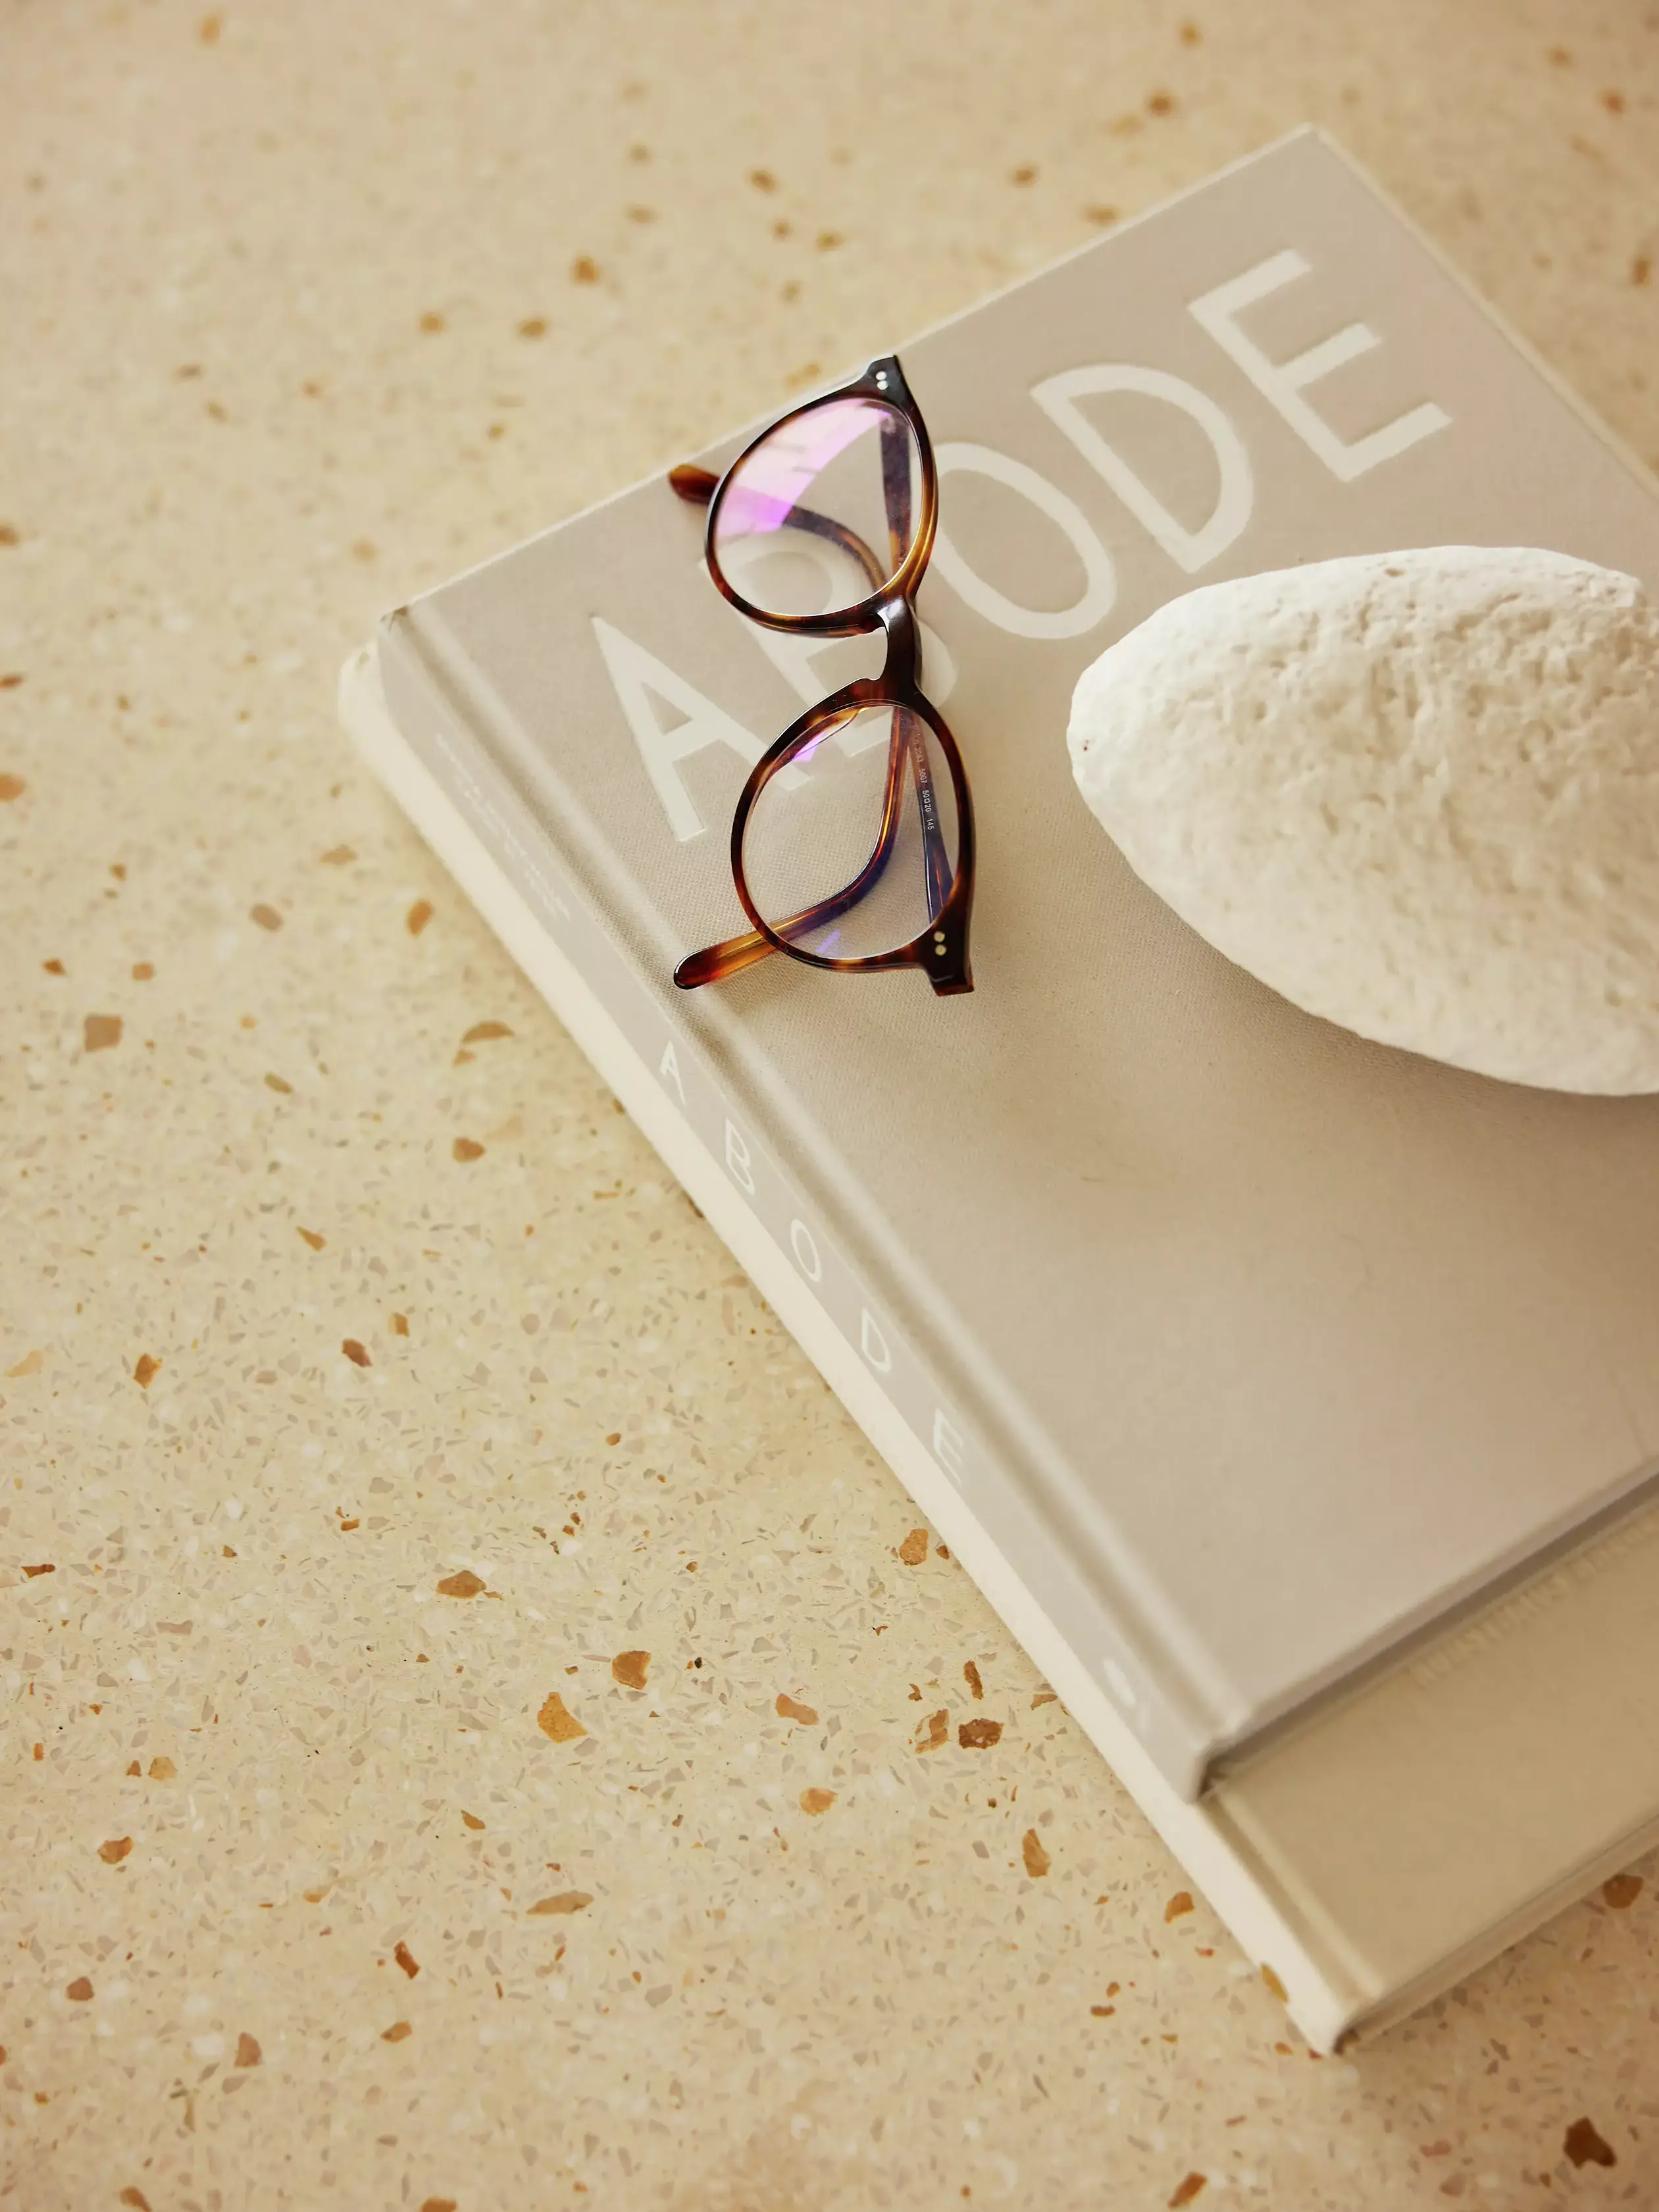 Lunettes sur le livre 'ABODE' avec un galet blanc sur une surface crème.